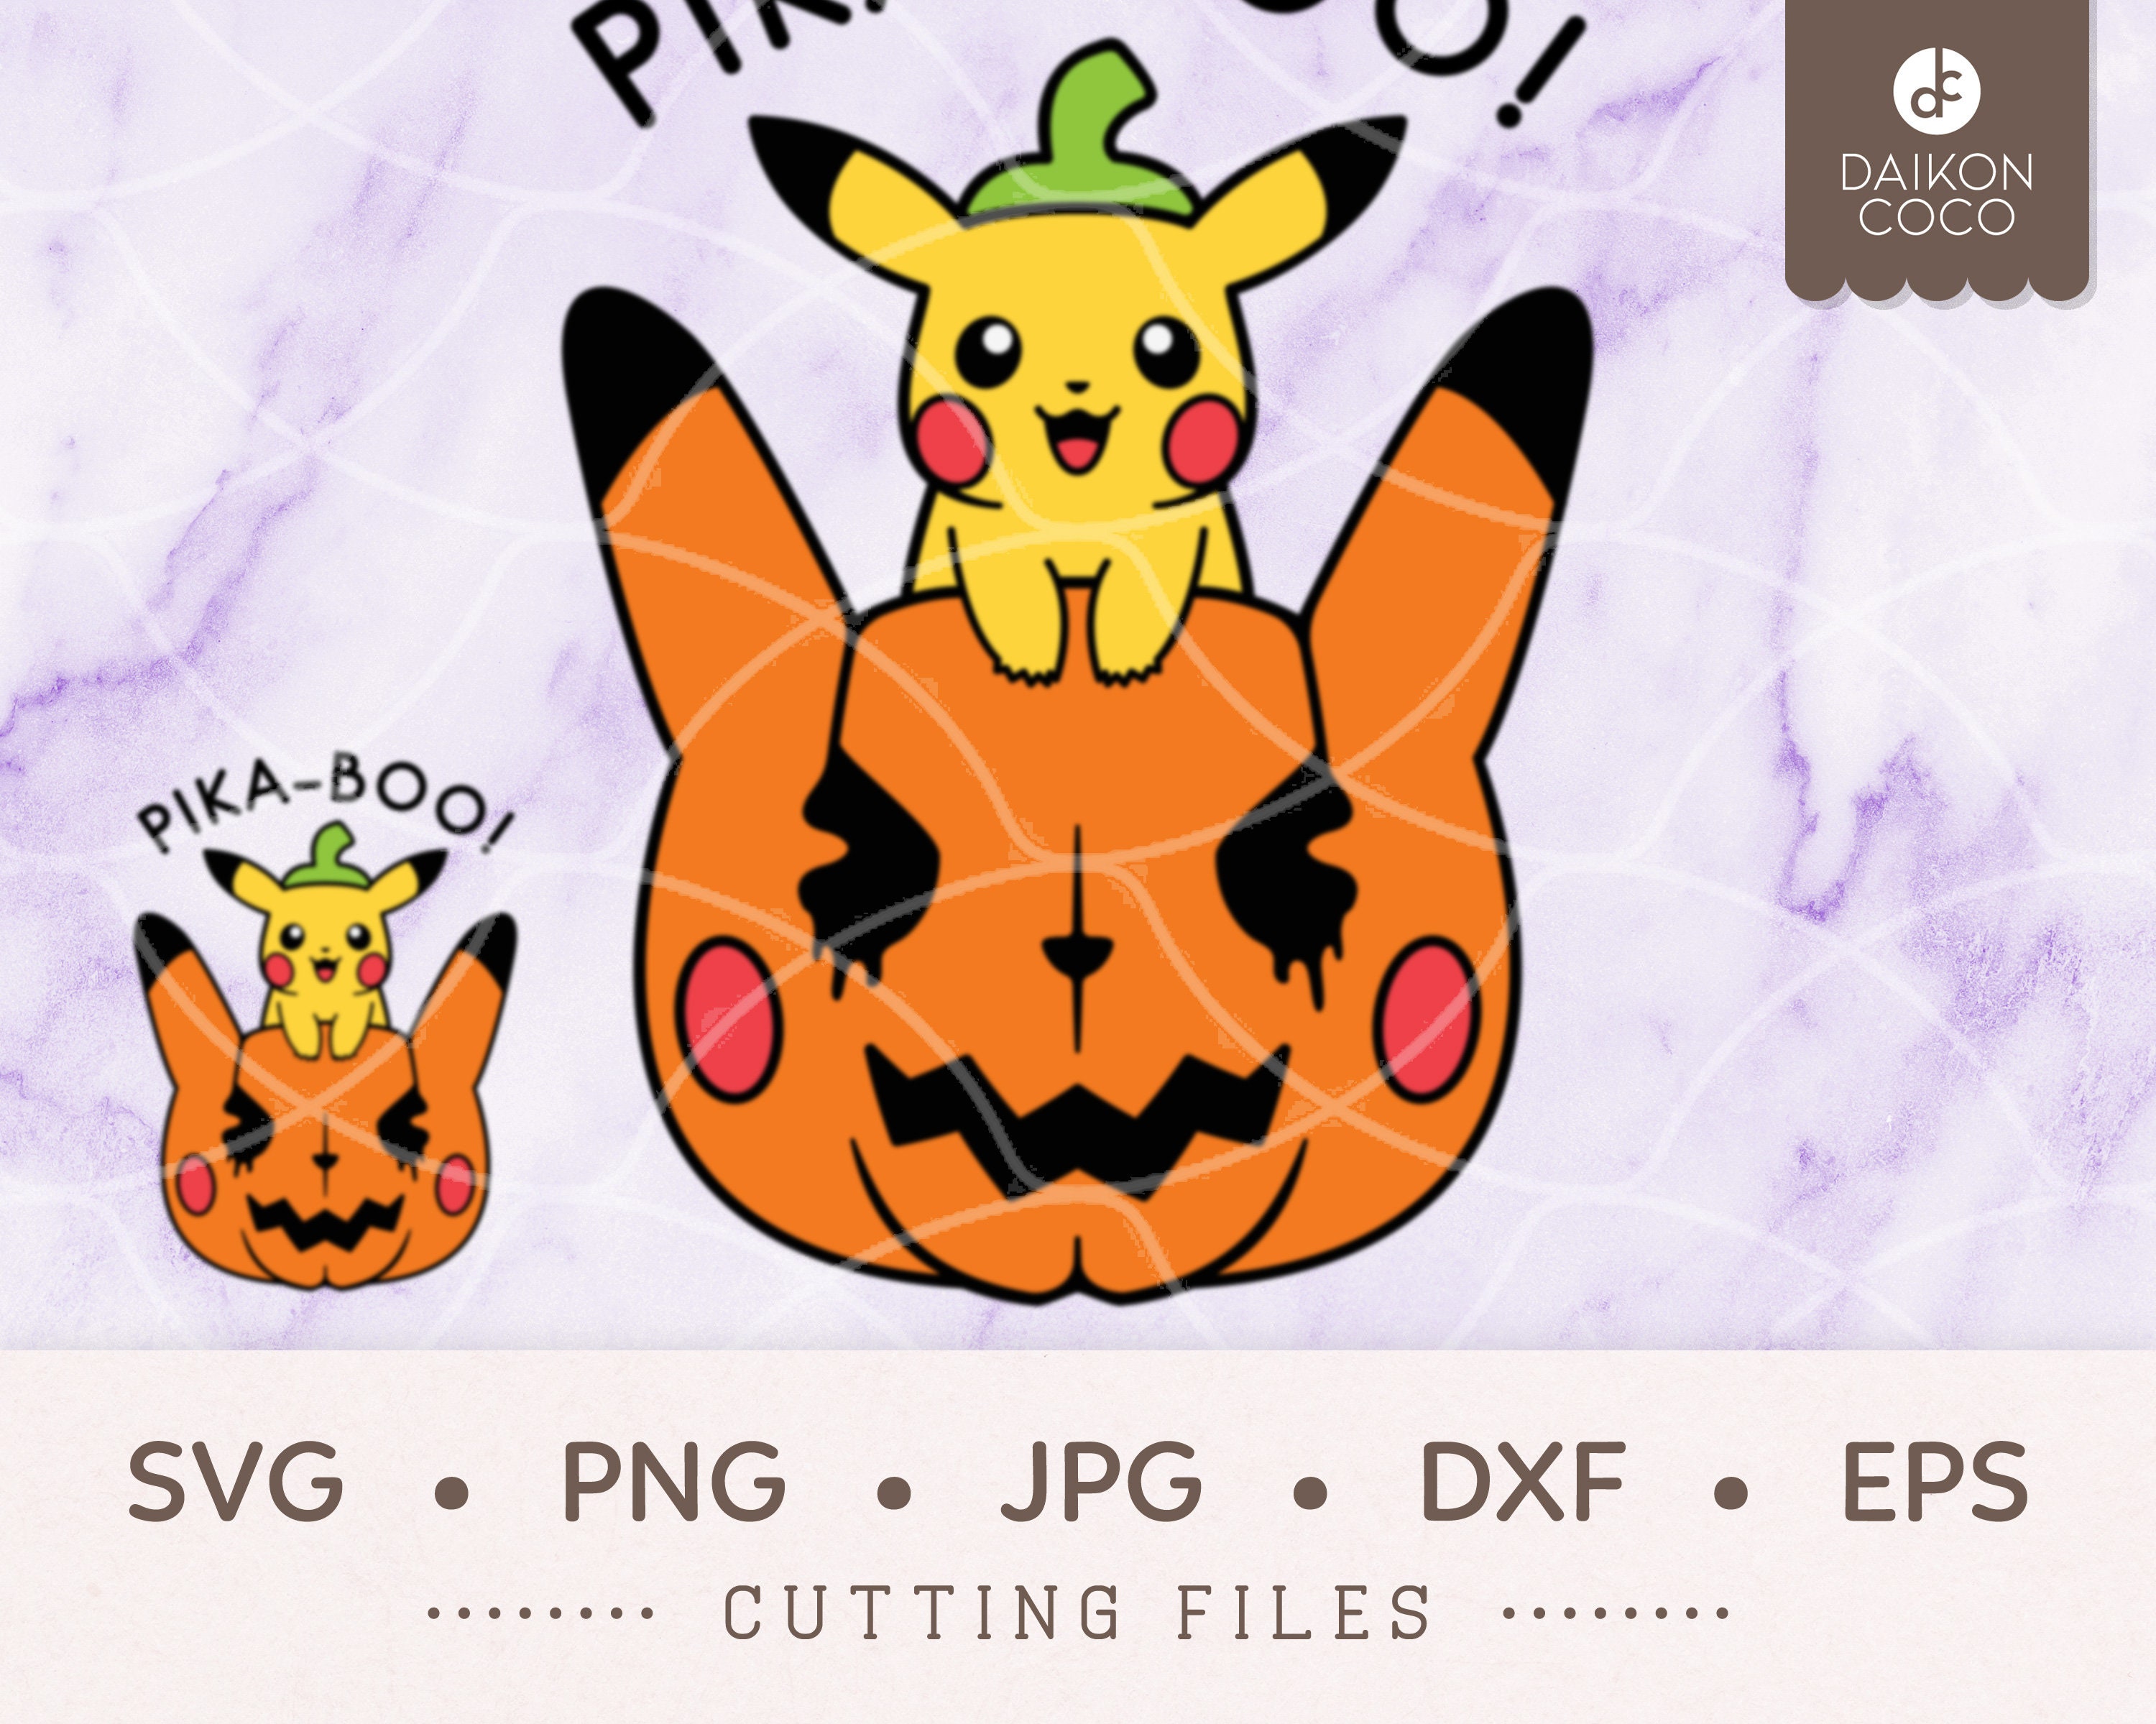 desenhos fáceis de fazer do pikachu - Pesquisa Google